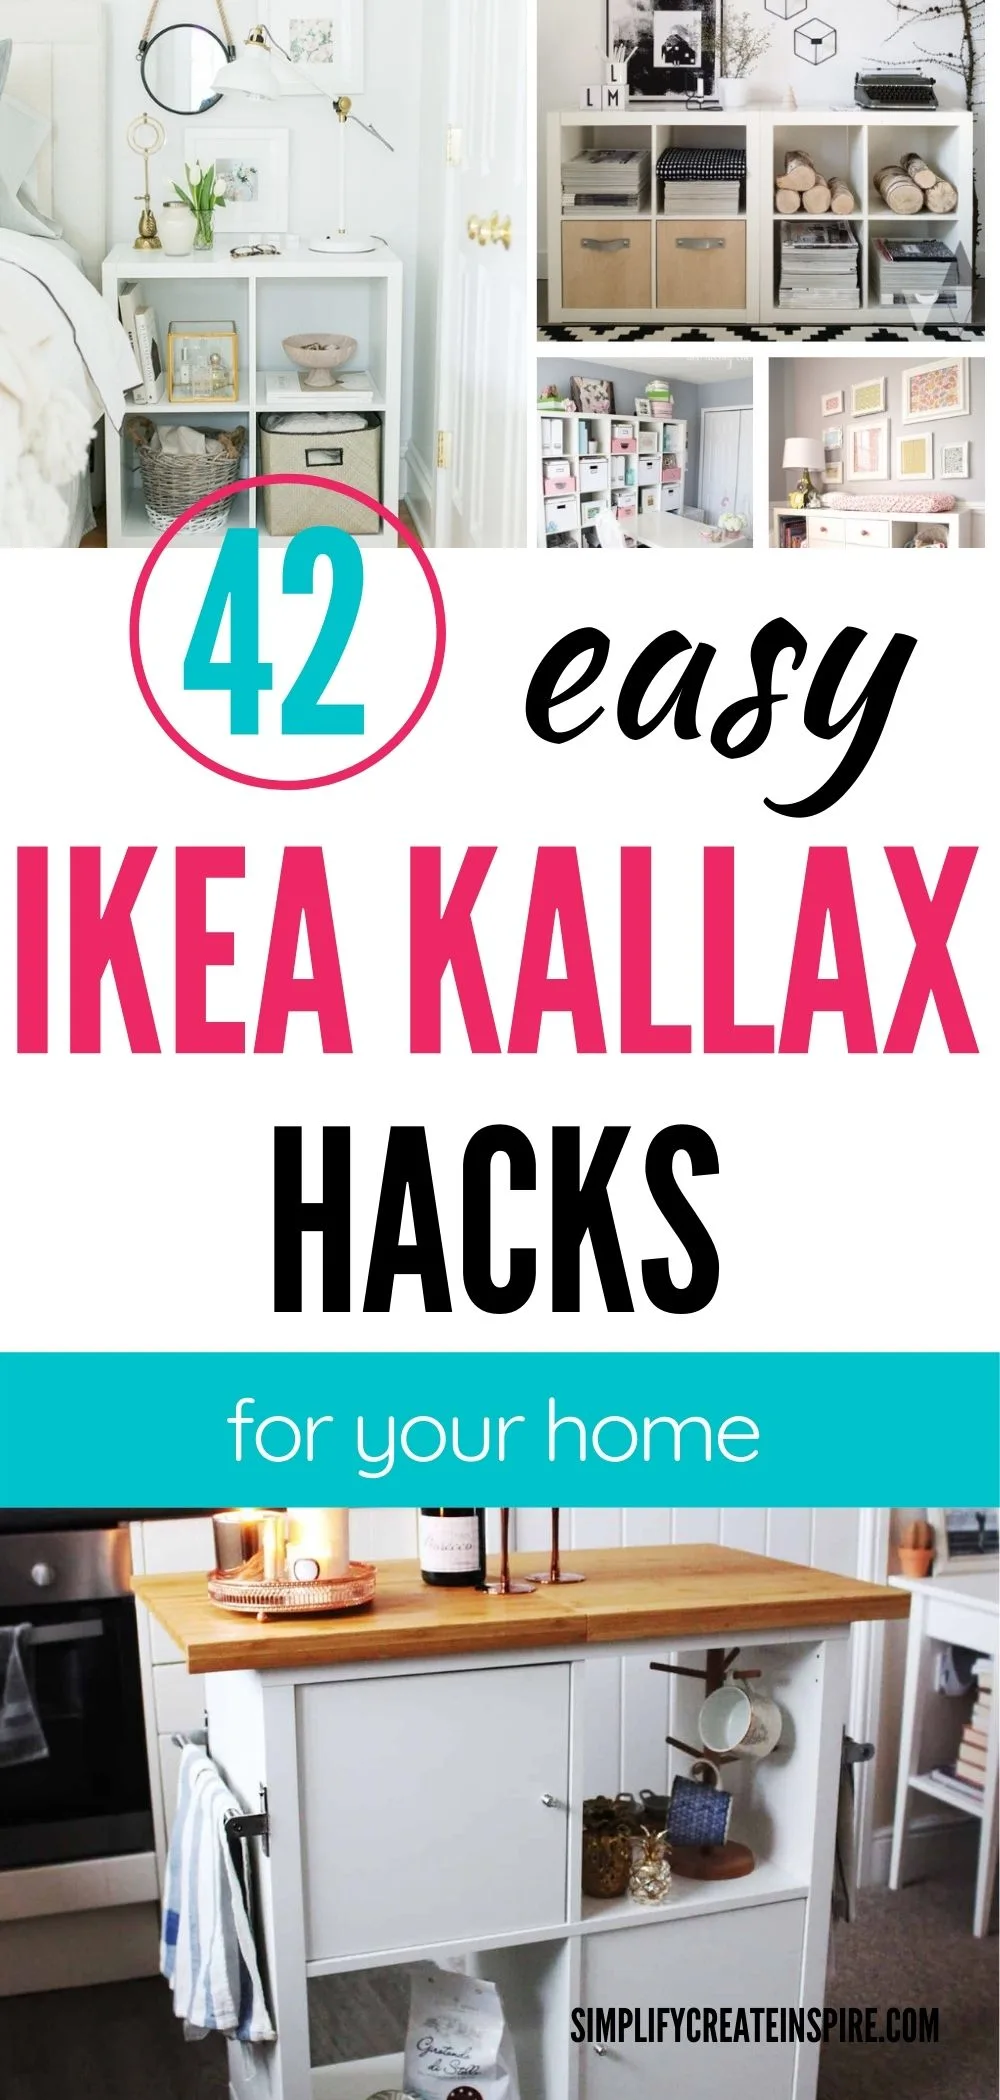 Ikea kallax hacks and kallax inspiration